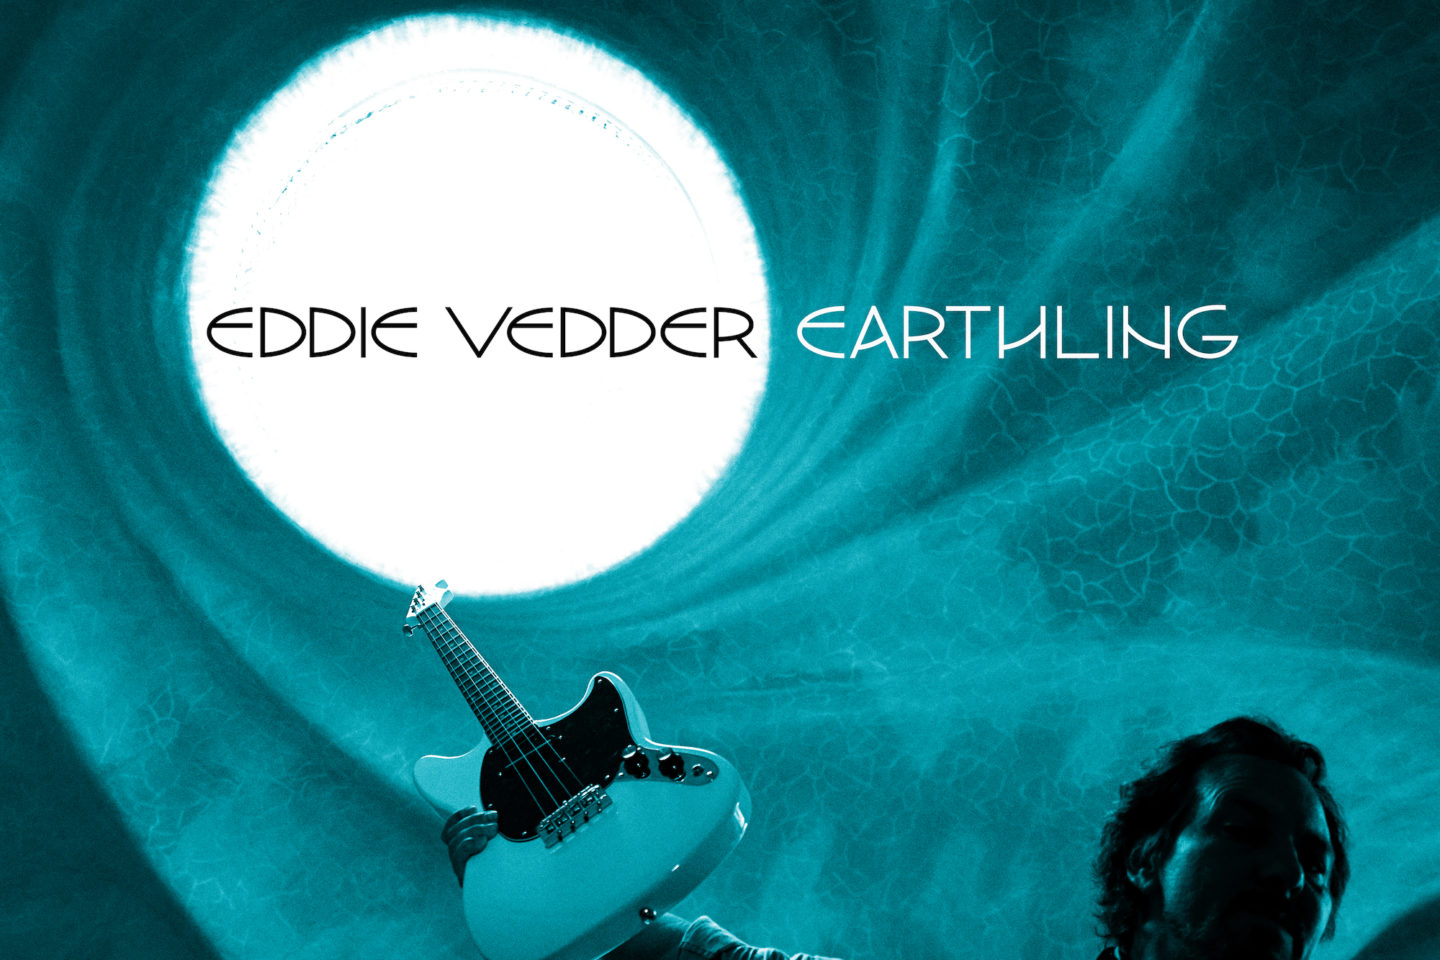 Eddie Vedder Earthling